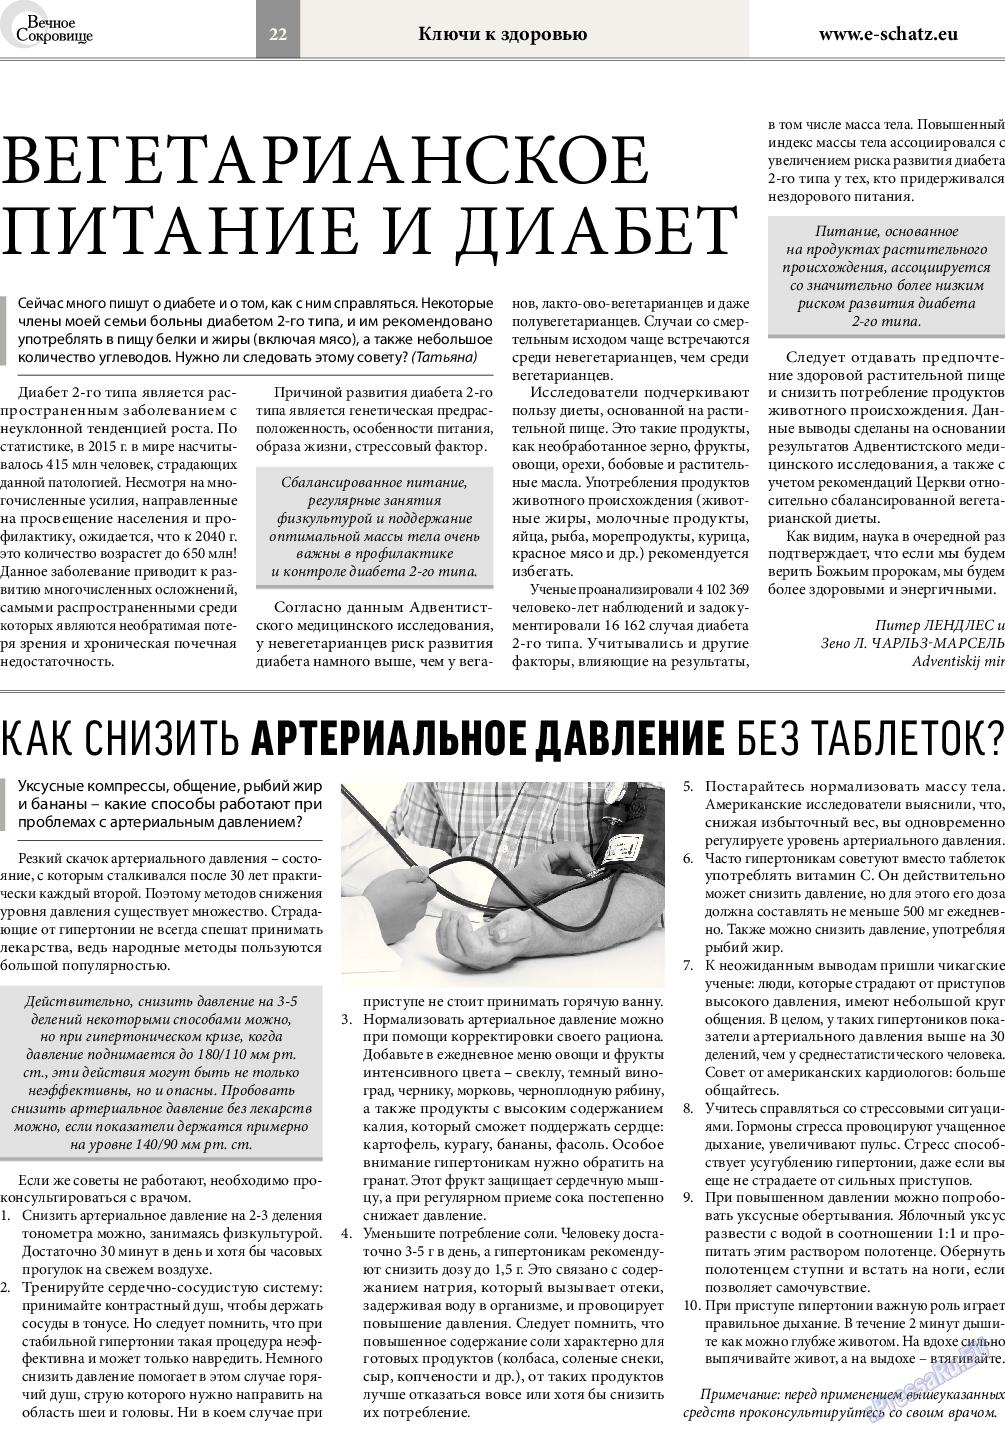 Вечное сокровище, газета. 2017 №3 стр.22